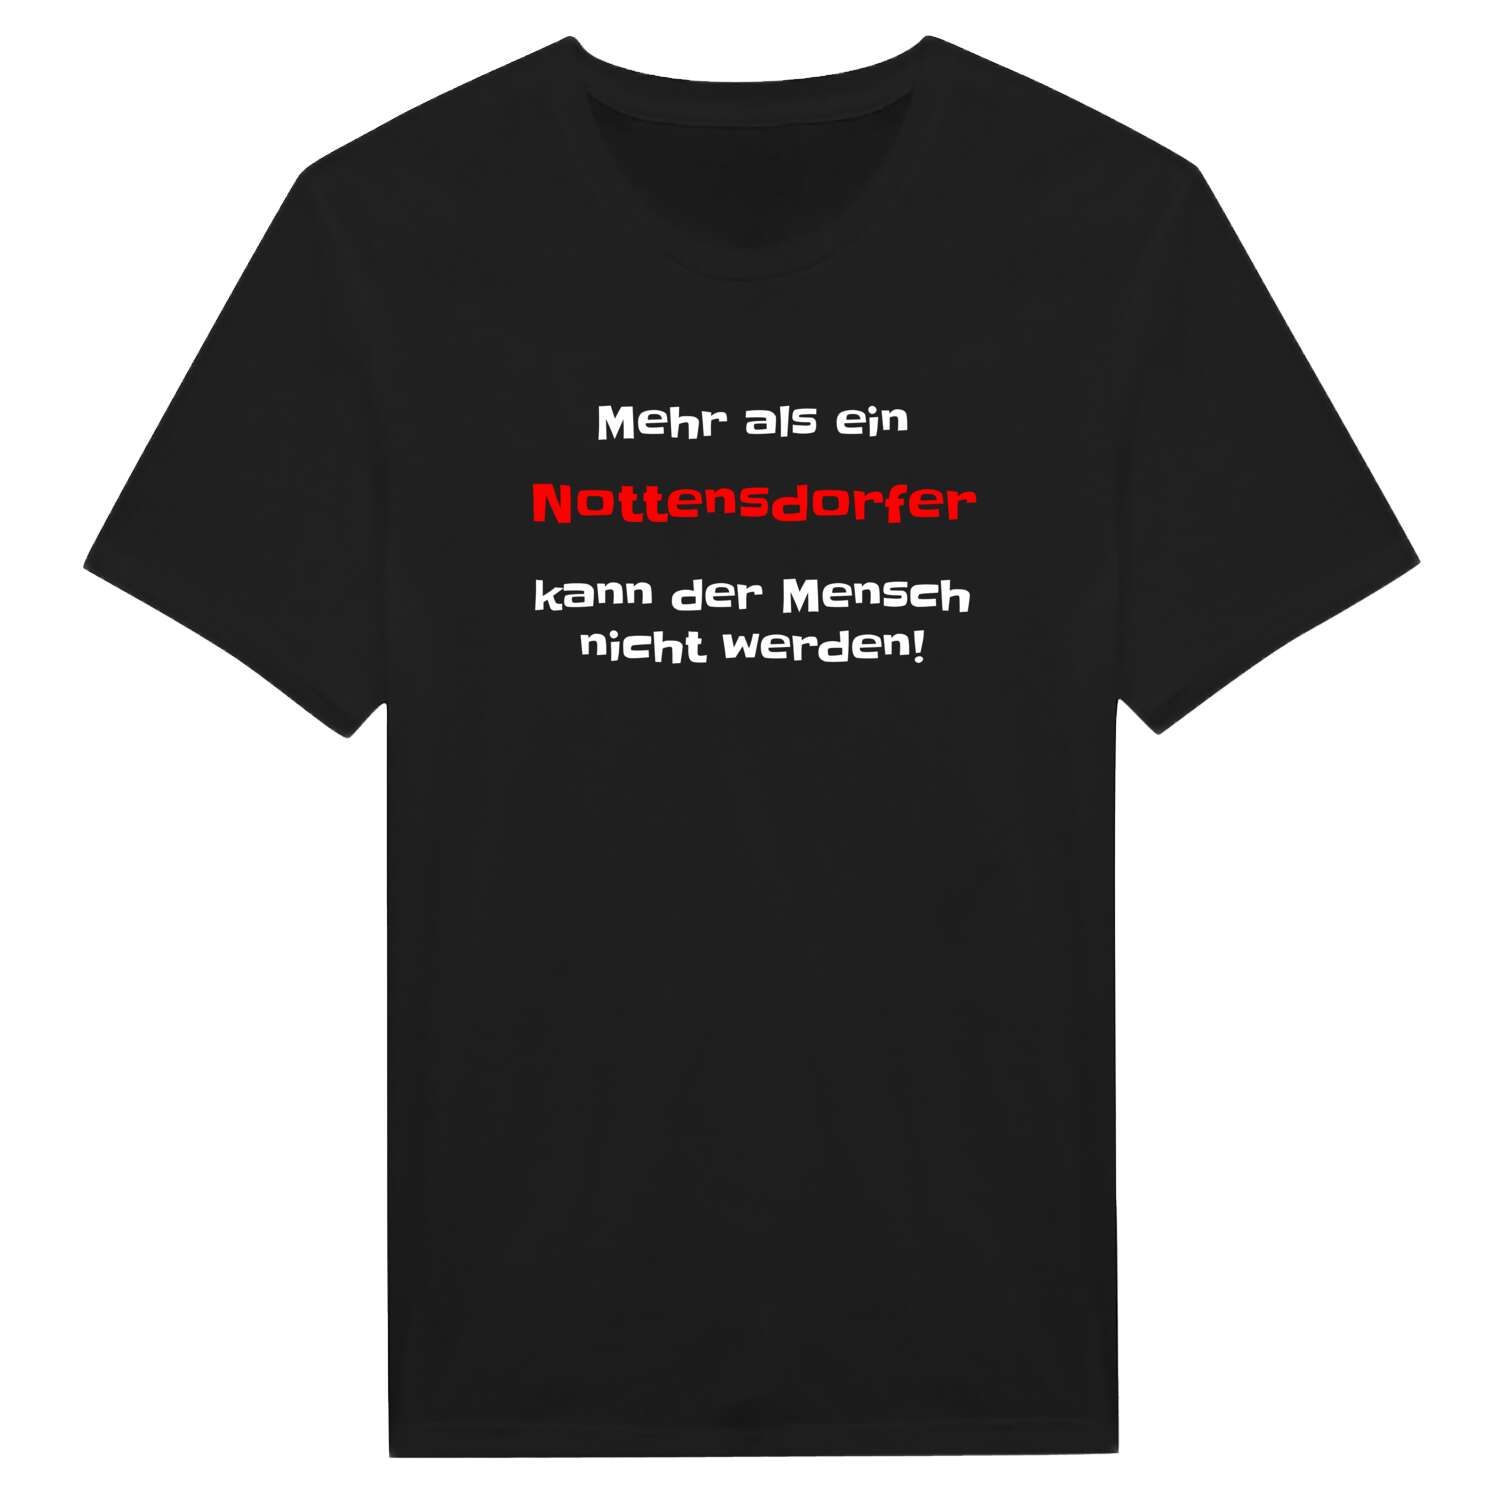 Nottensdorf T-Shirt »Mehr als ein«